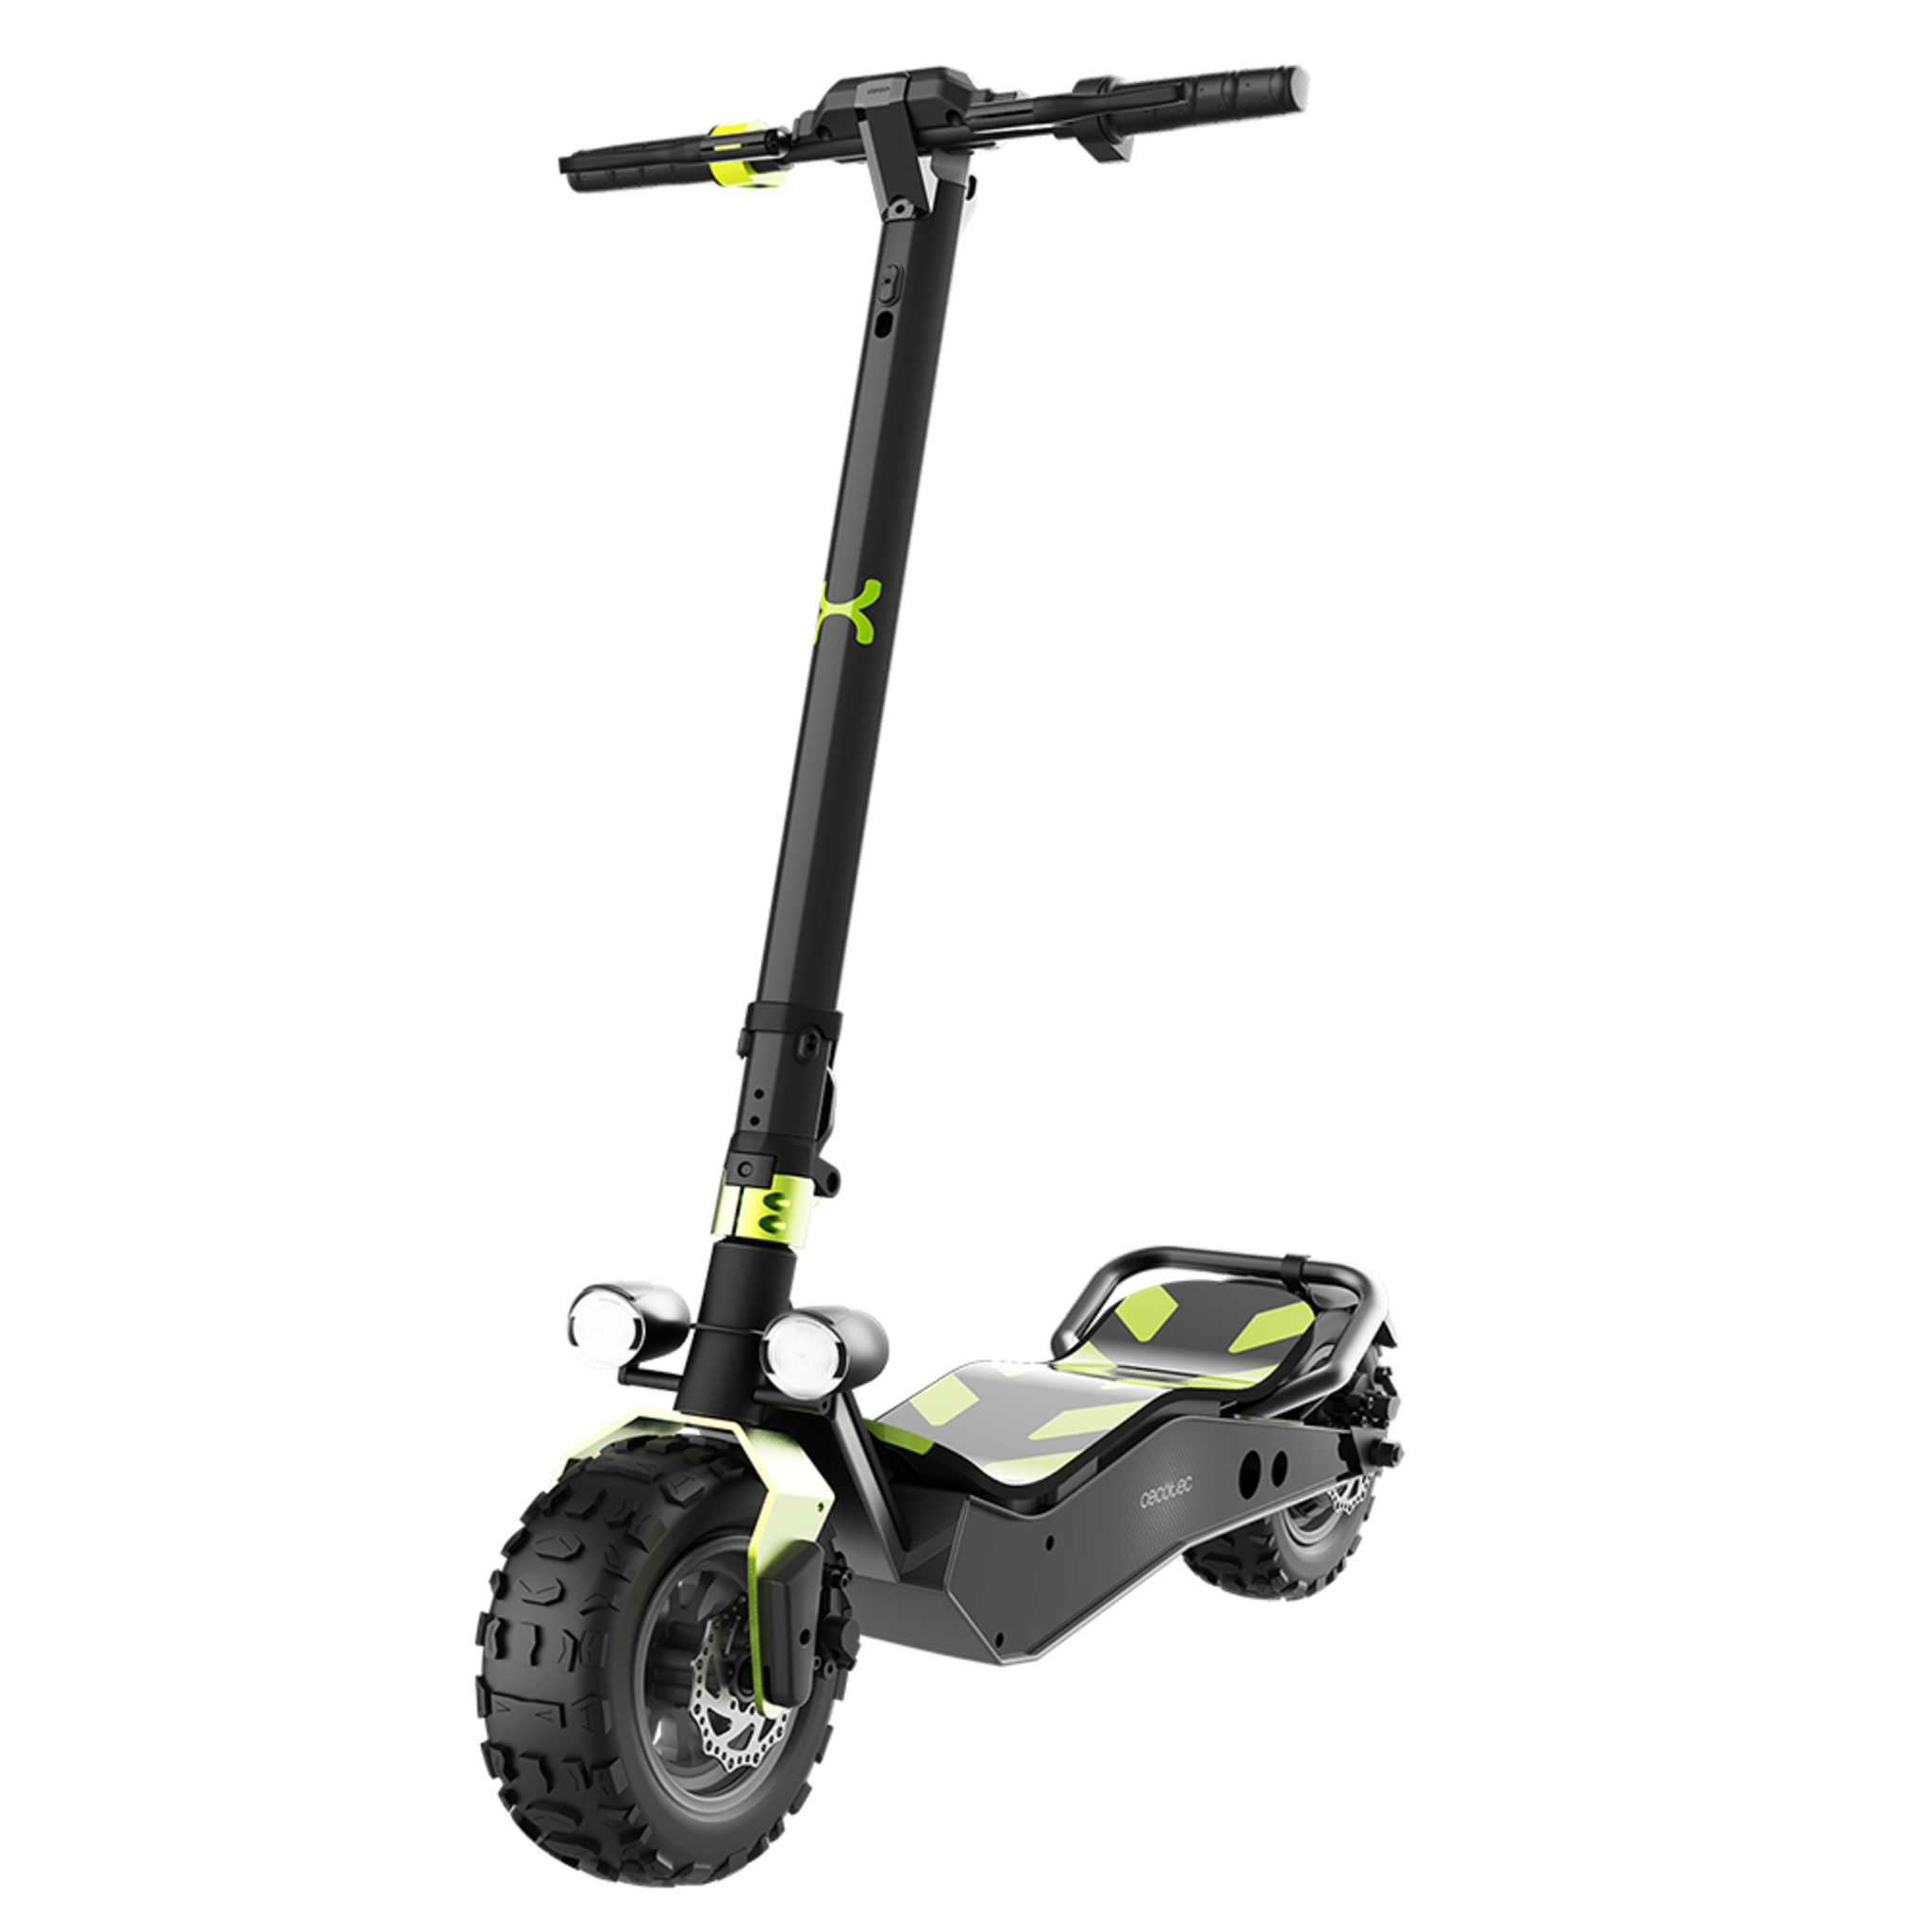 Trottinette électrique Bongo Série Z Off Road Green. Puissance maximale de 1100 W, batterie extractible, autonomie illimitée jusqu'à 40 km, traction arrière et roues anti-crevaison de 12”